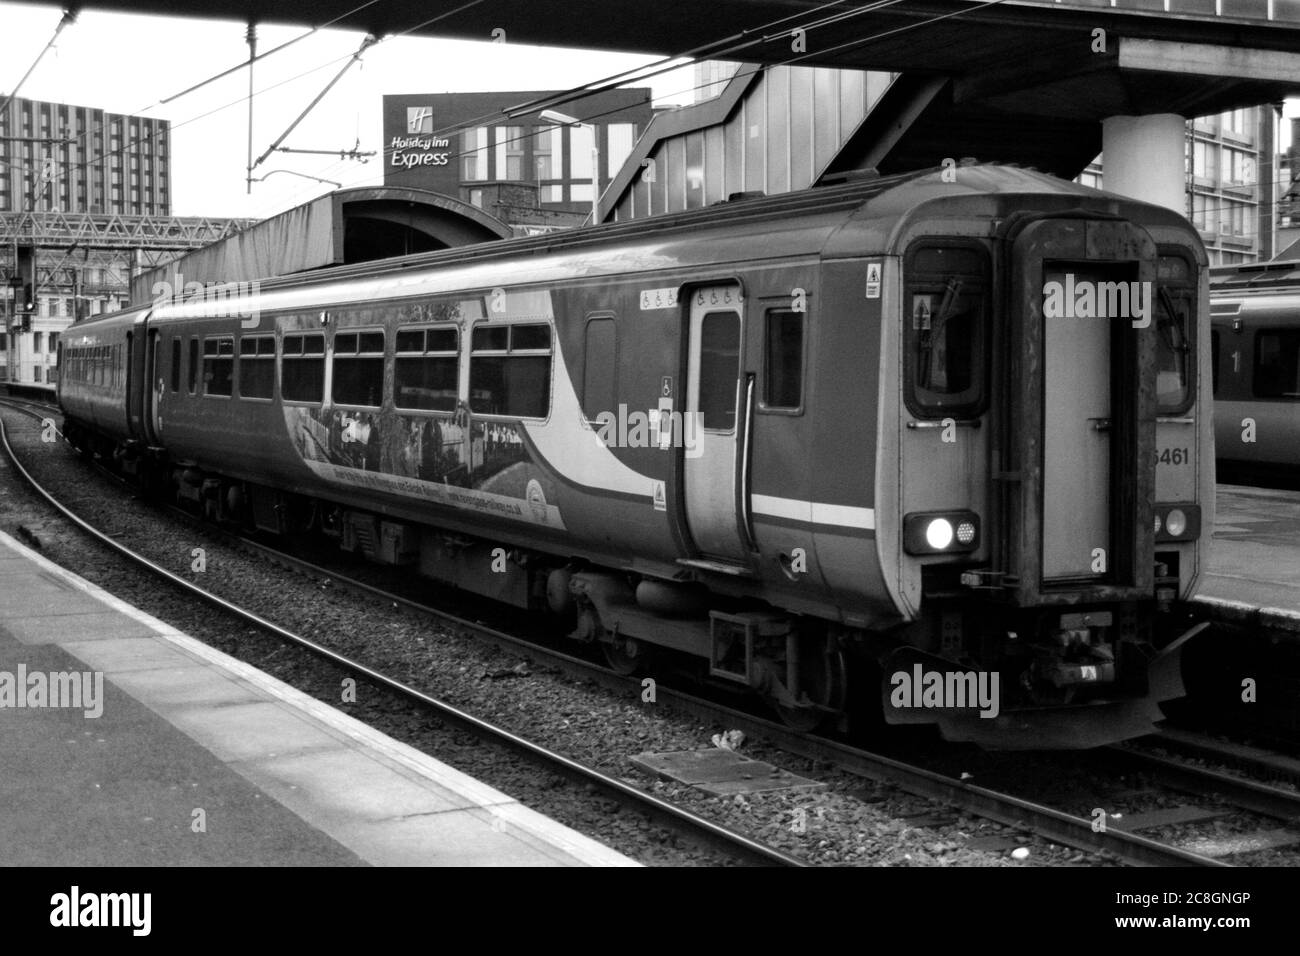 Manchester, Großbritannien - 2018: Ein Northern Zug (BR-Klasse 156) am Manchester Oxford Station Bahnsteig 4 für den lokalen Personenverkehr. Stockfoto